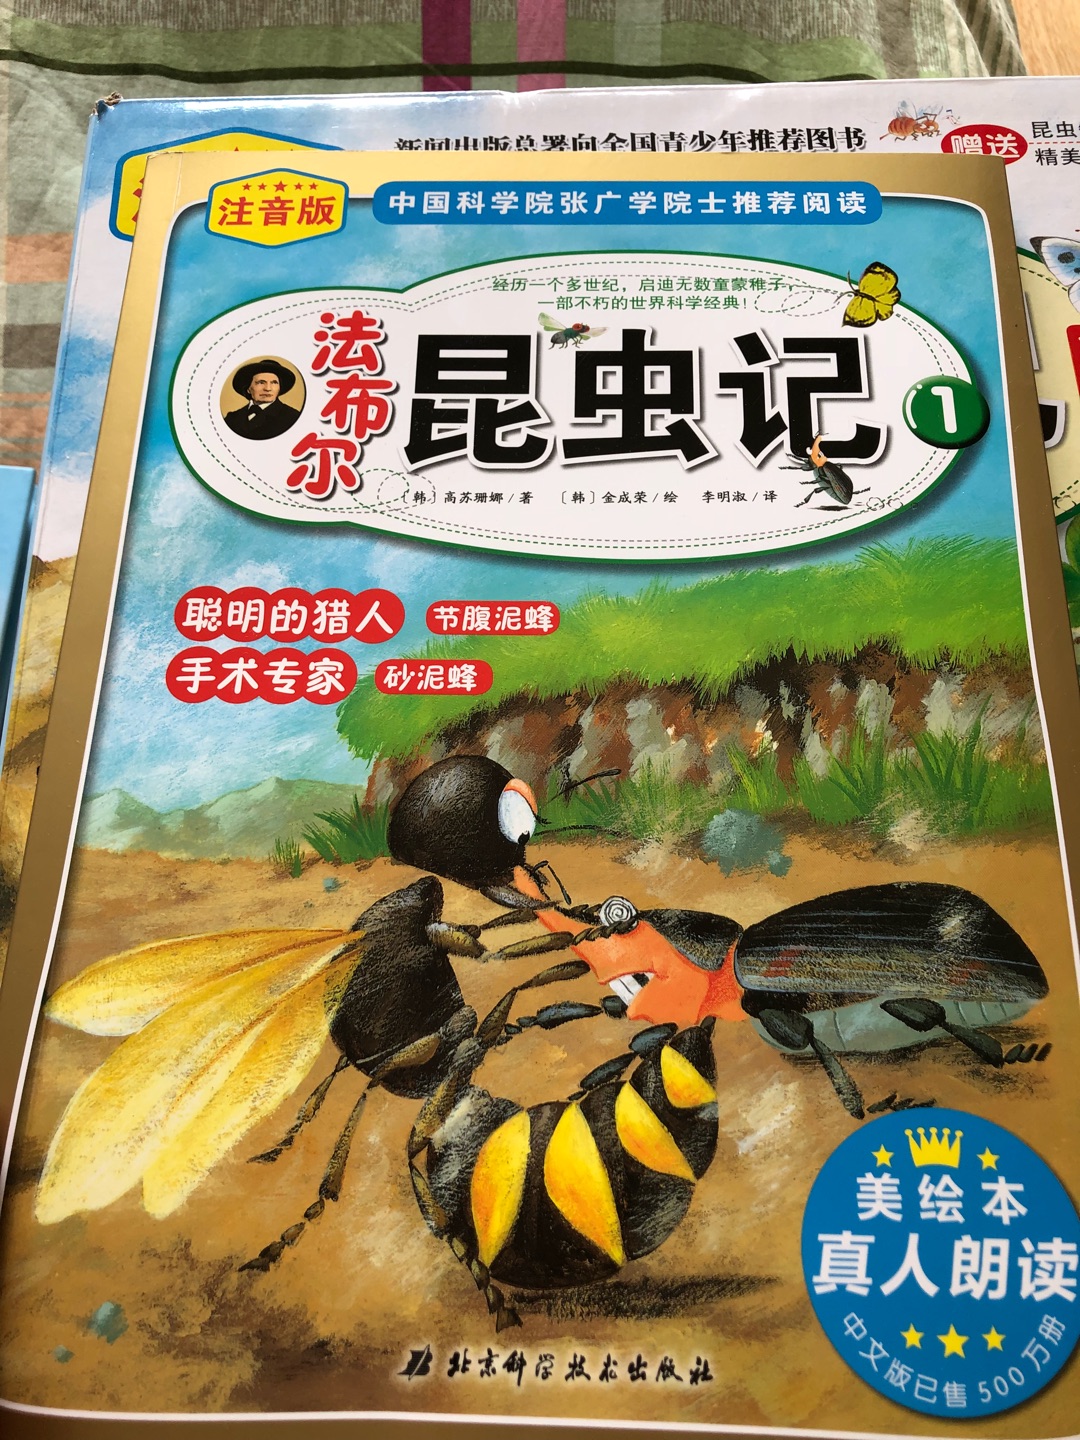 被推荐的一套很棒的讲解昆虫的书籍，增长知识，趣味恒生，以故事的情节方式了解各种昆虫的习性！很棒